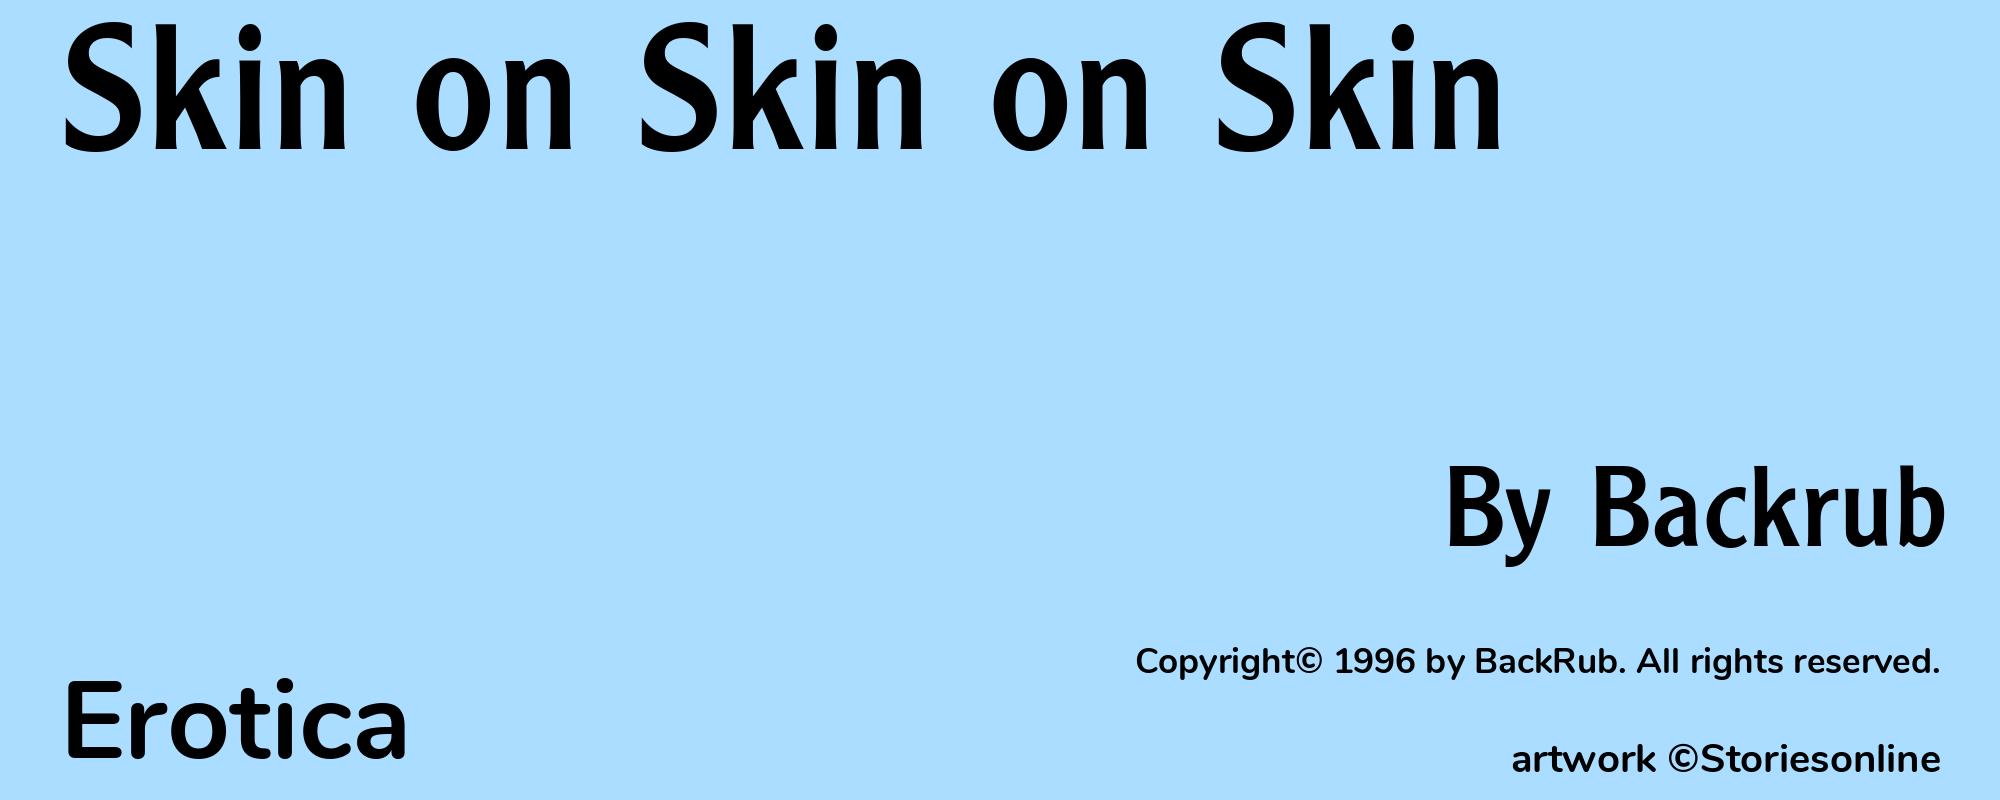 Skin on Skin on Skin - Cover